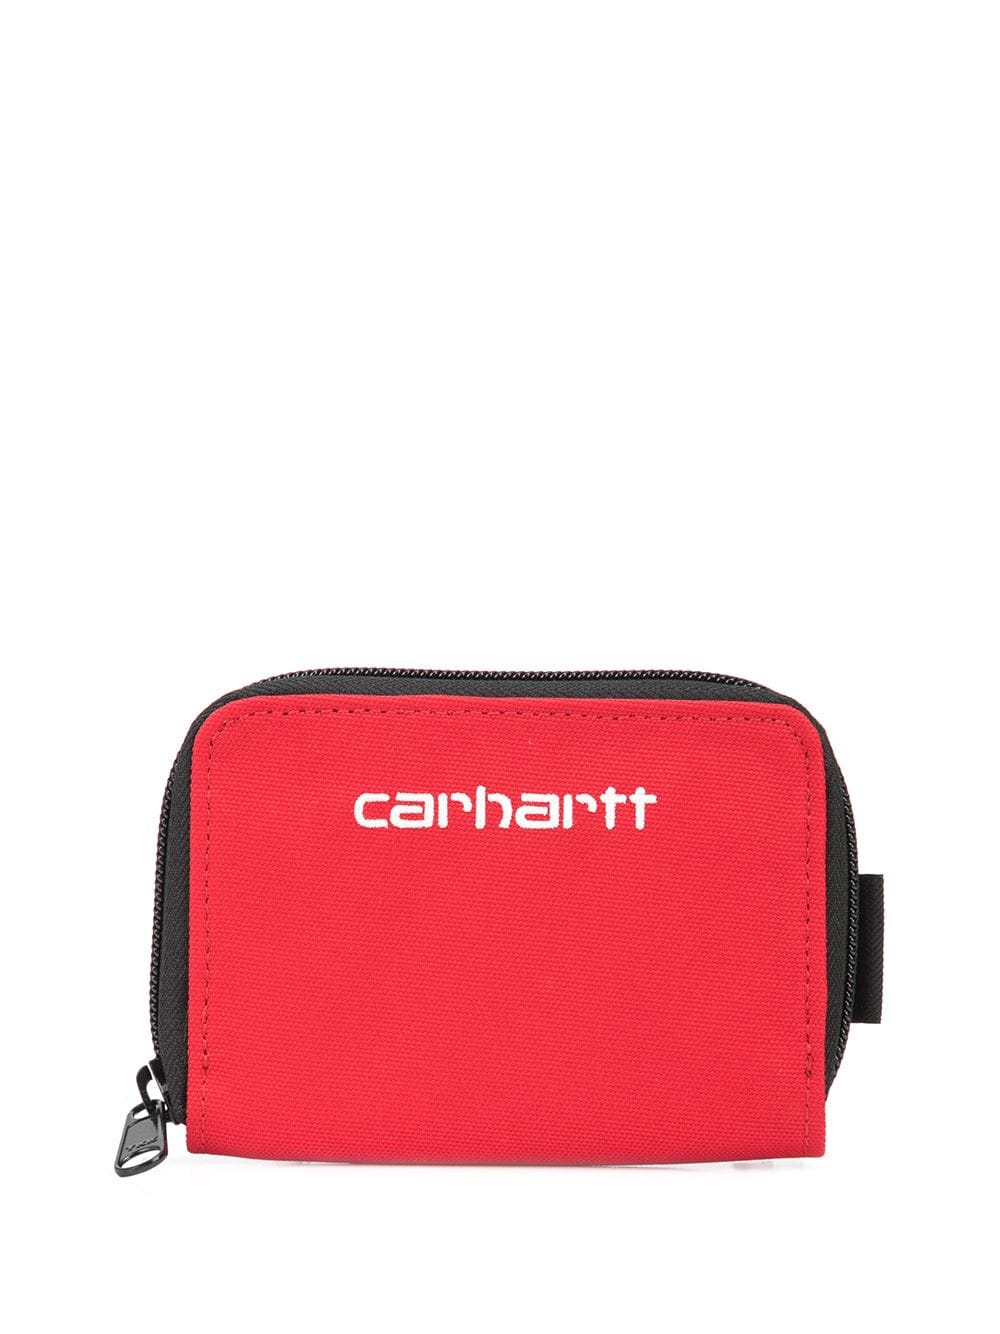 фото Carhartt wip кошелек payton с логотипом